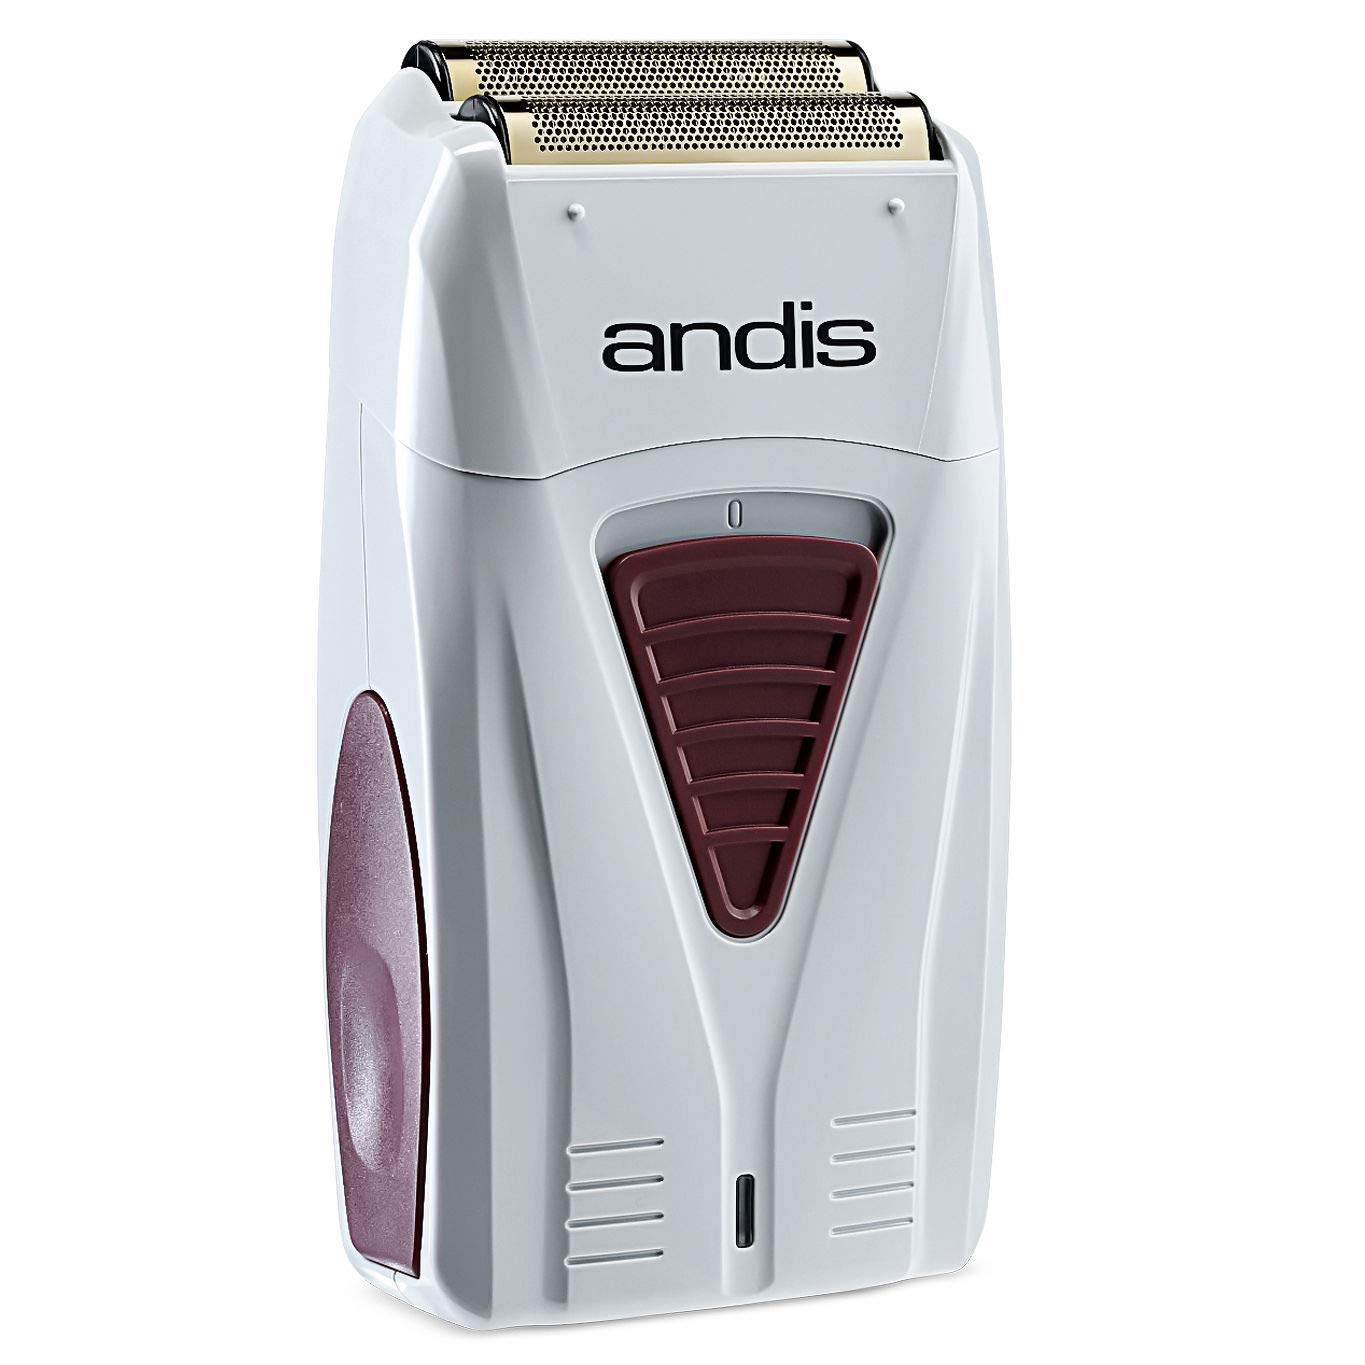 Andis 17150 Pro Foil Lithium Titanium Cord/Cordless Shaver